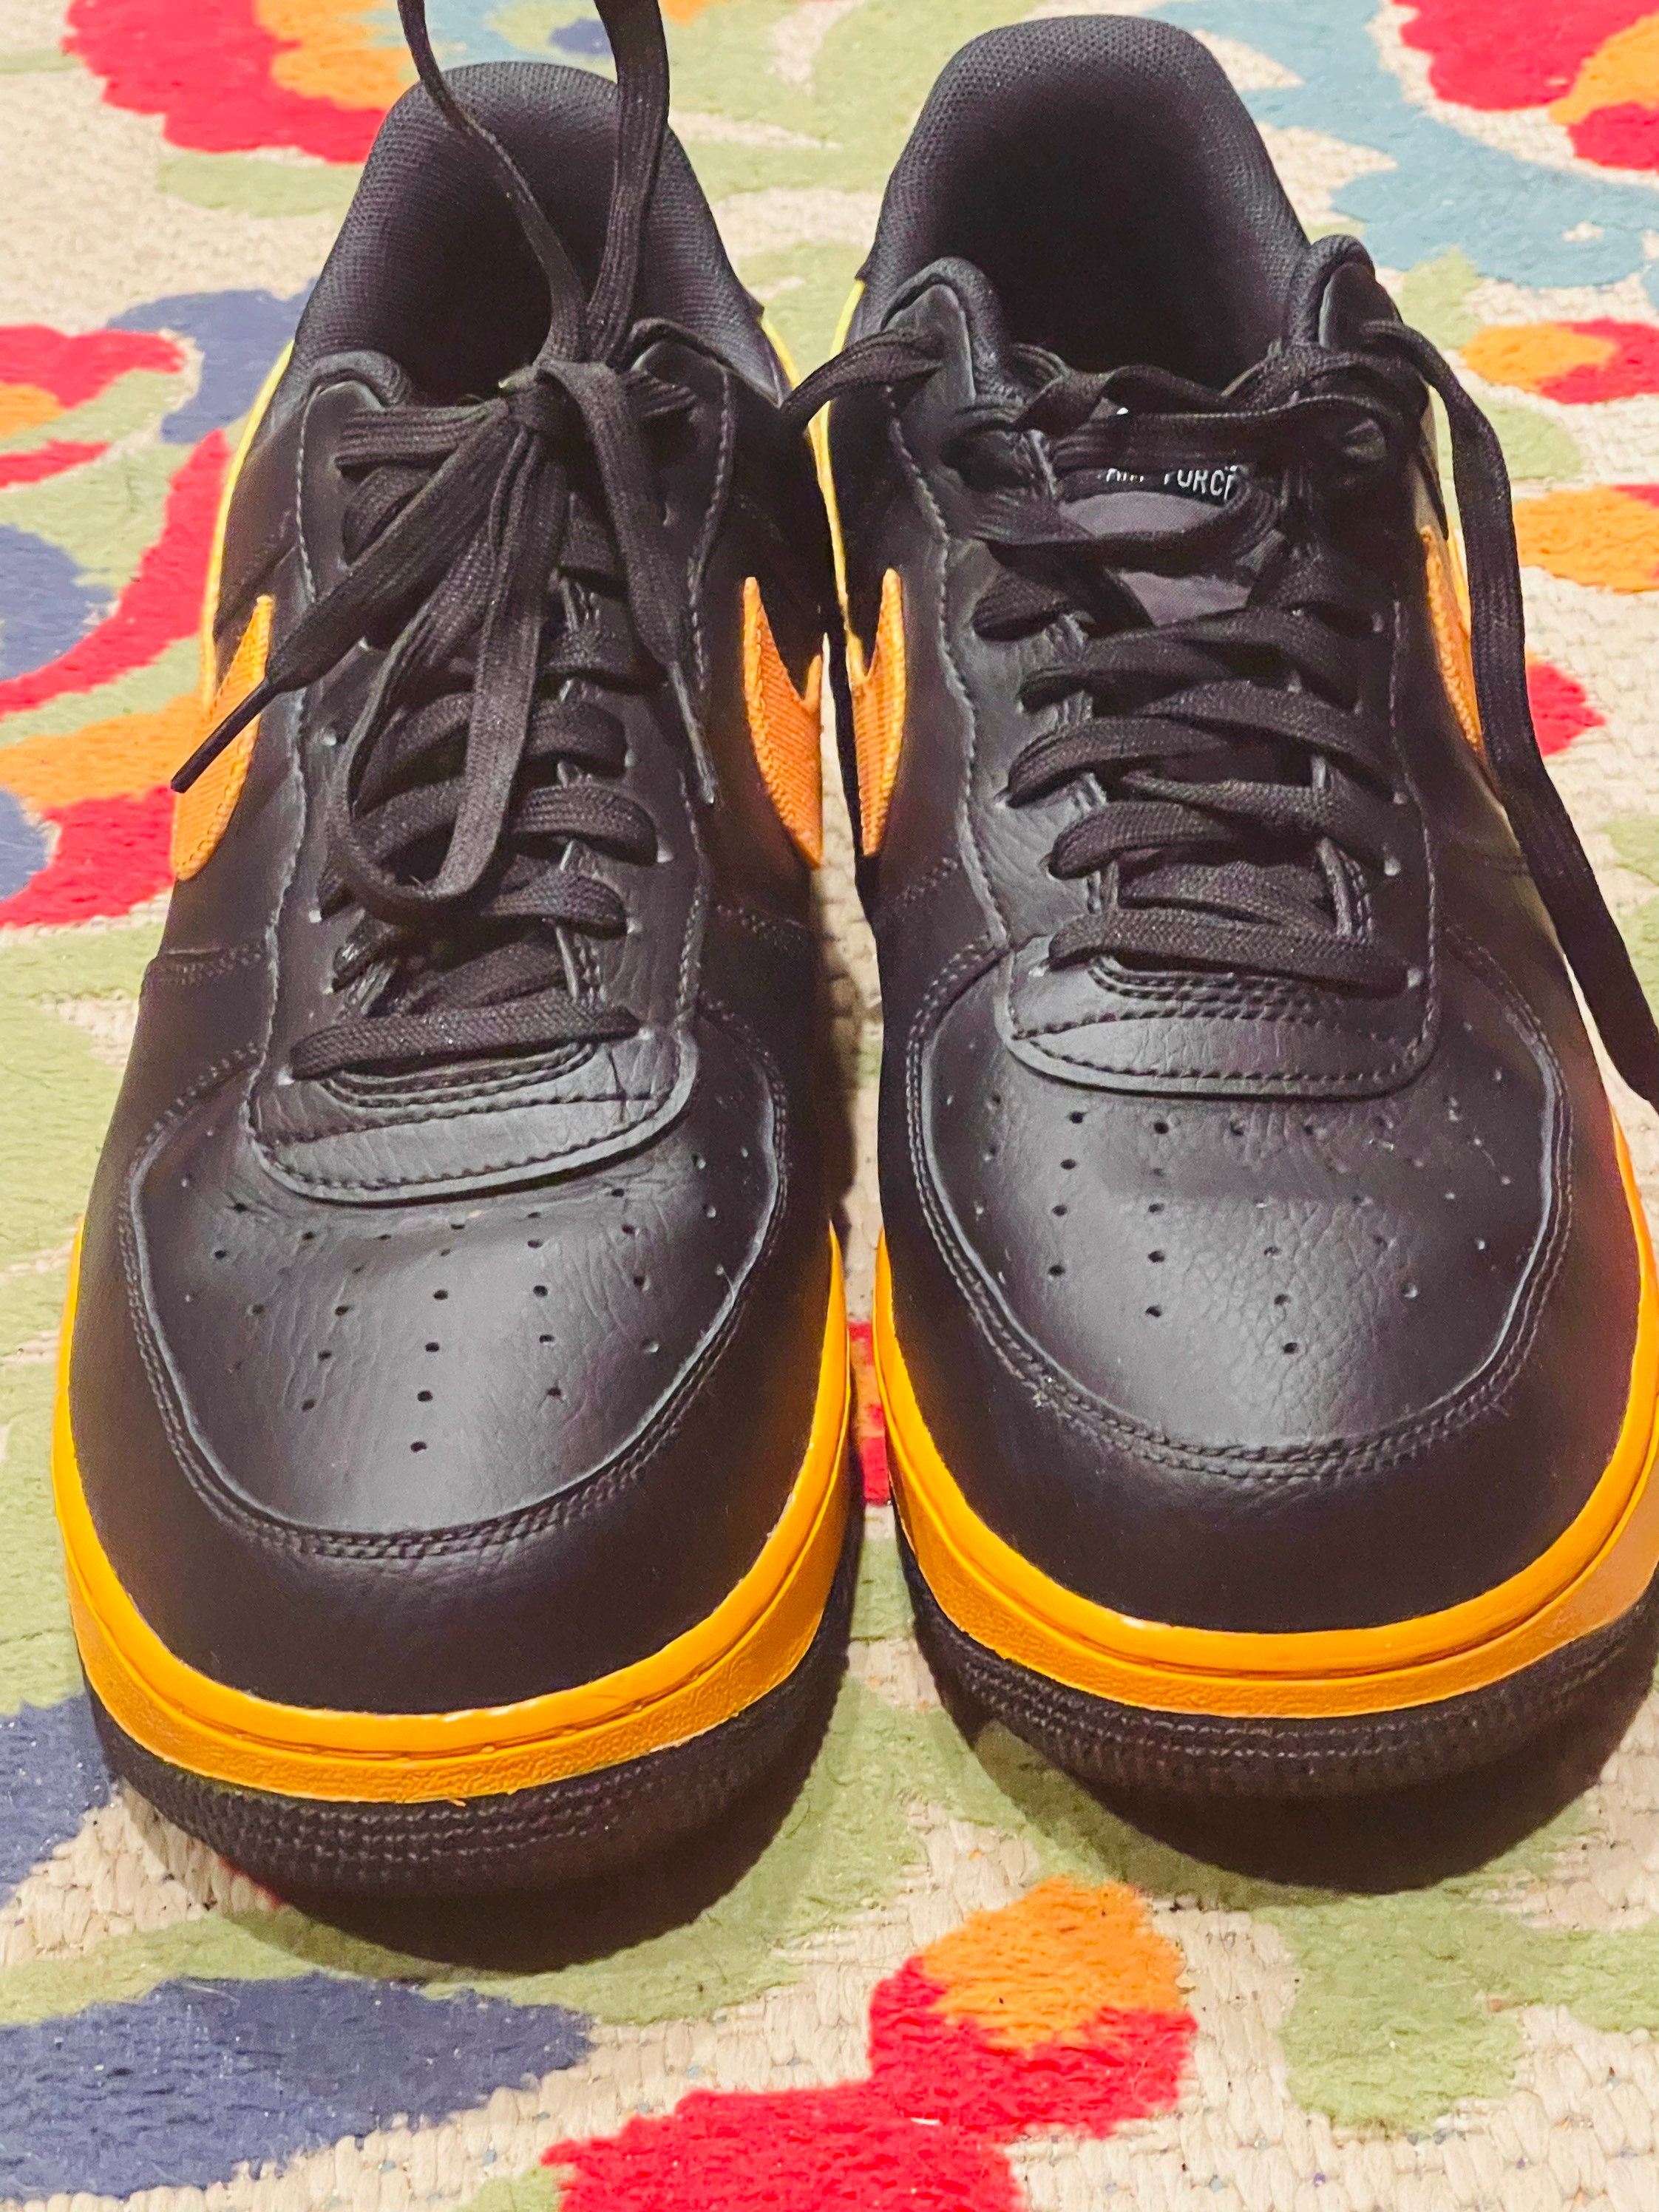 Nike Air Force 1 Sneakers low LV8 Black Orange Peel 11 - Etsy